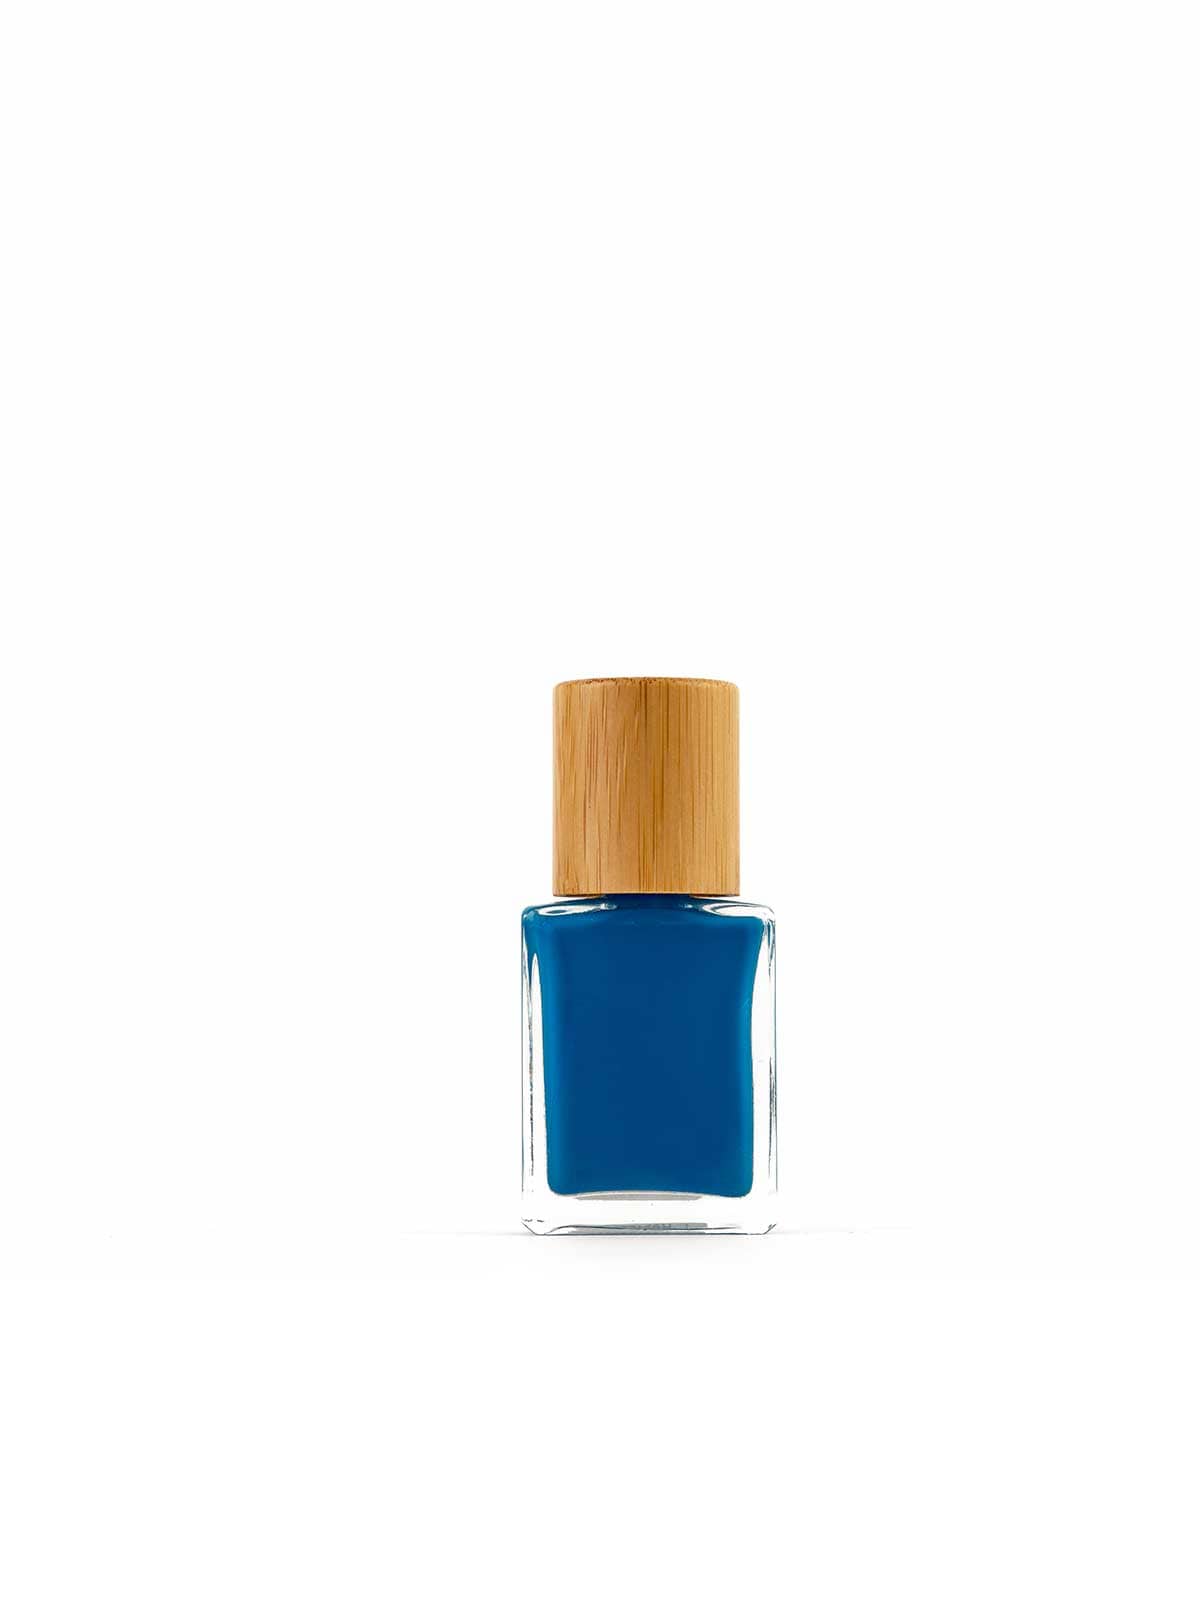 Blå, Vegansk og giftfri neglelakk fra det italienske merket Licia Florio - Oolong